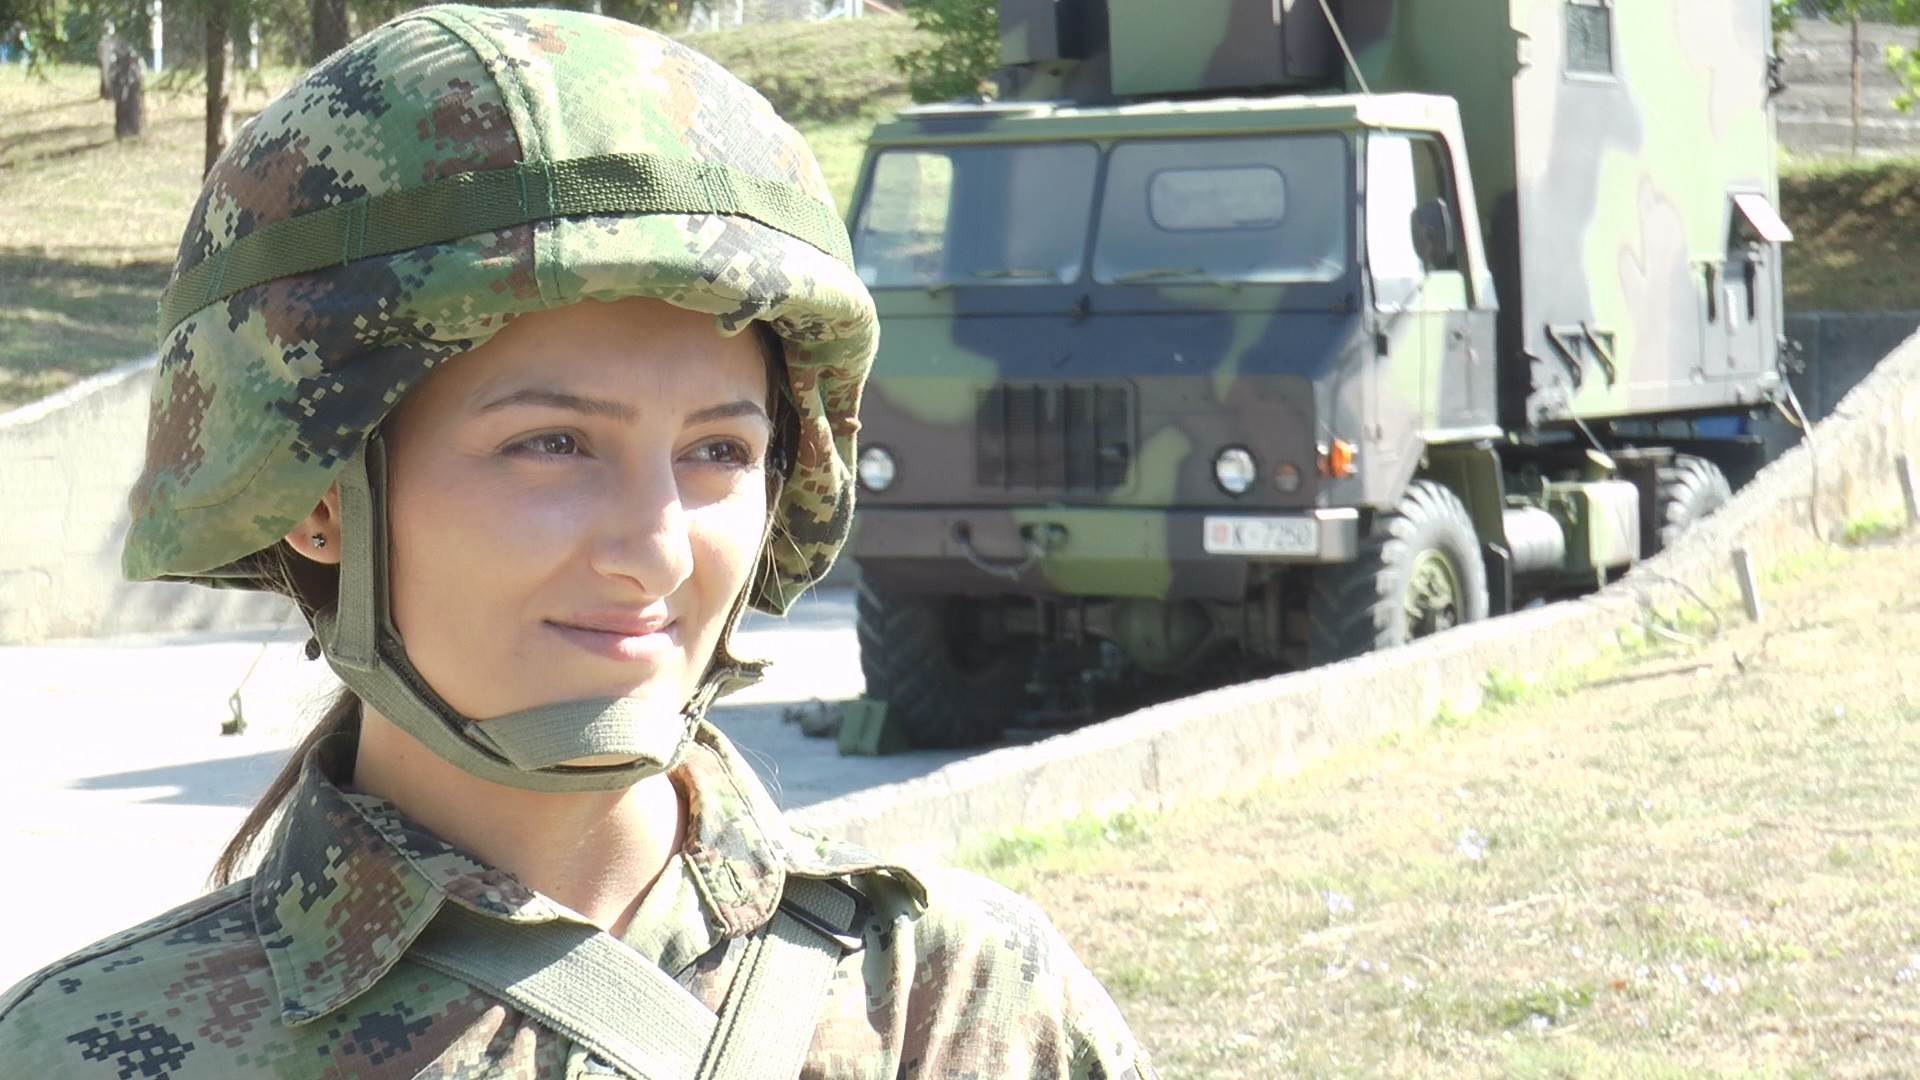  vojska srbije vojni rok marija bogavac devojka vojnik 